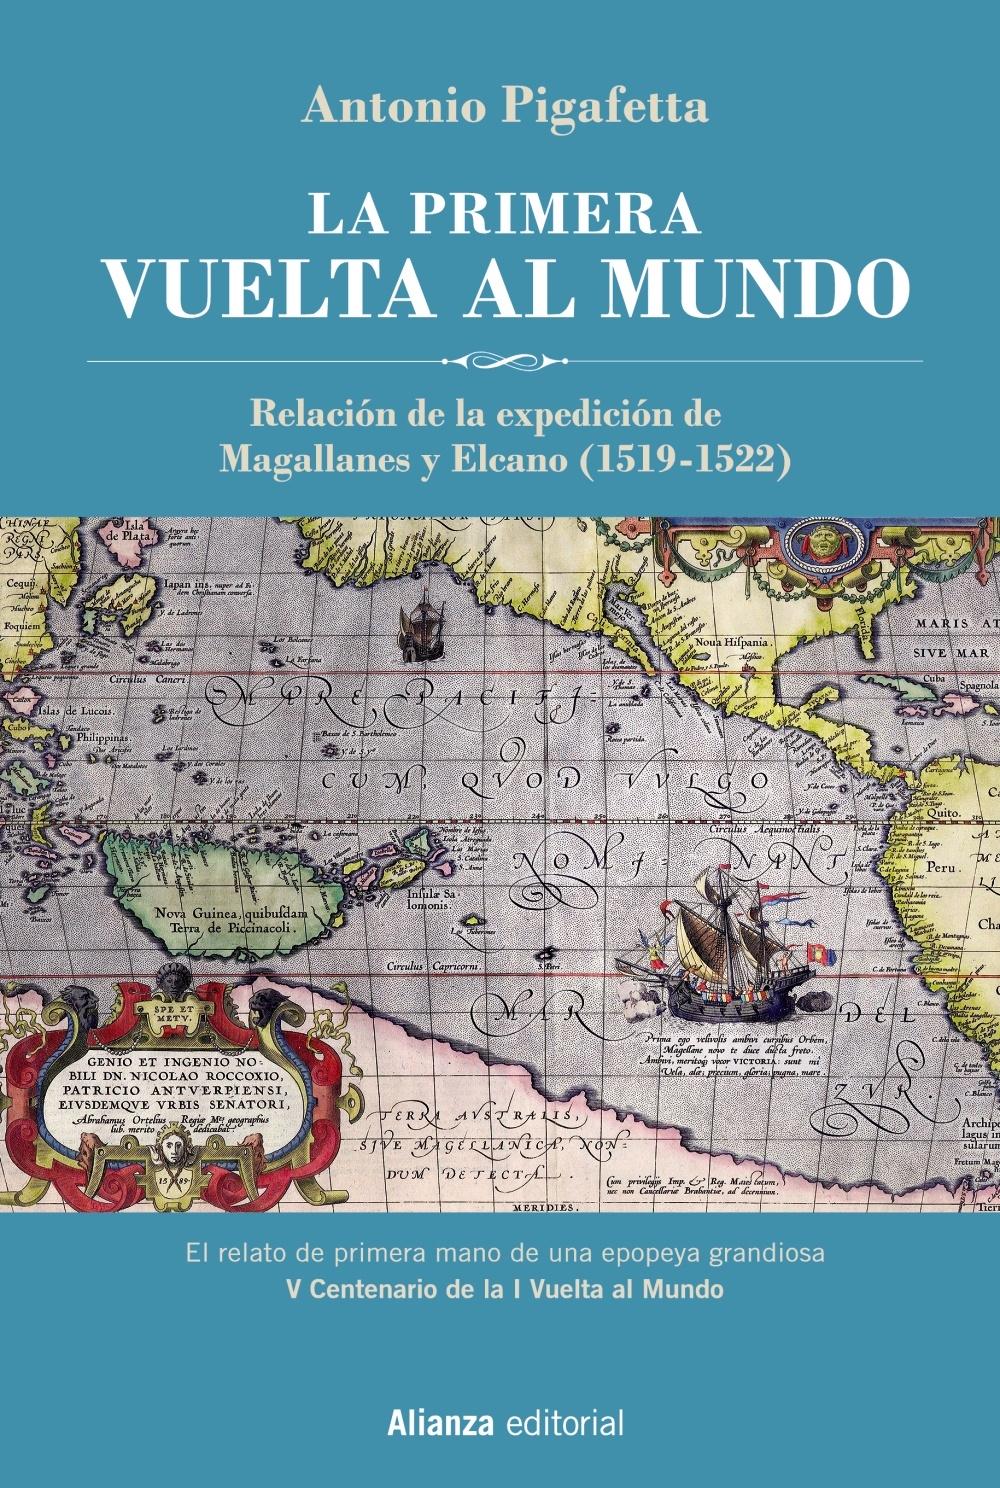 La Primera Vuelta al Mundo  Edición Ilustrada "Relación de la Expedición de Magallanes y Elcano"